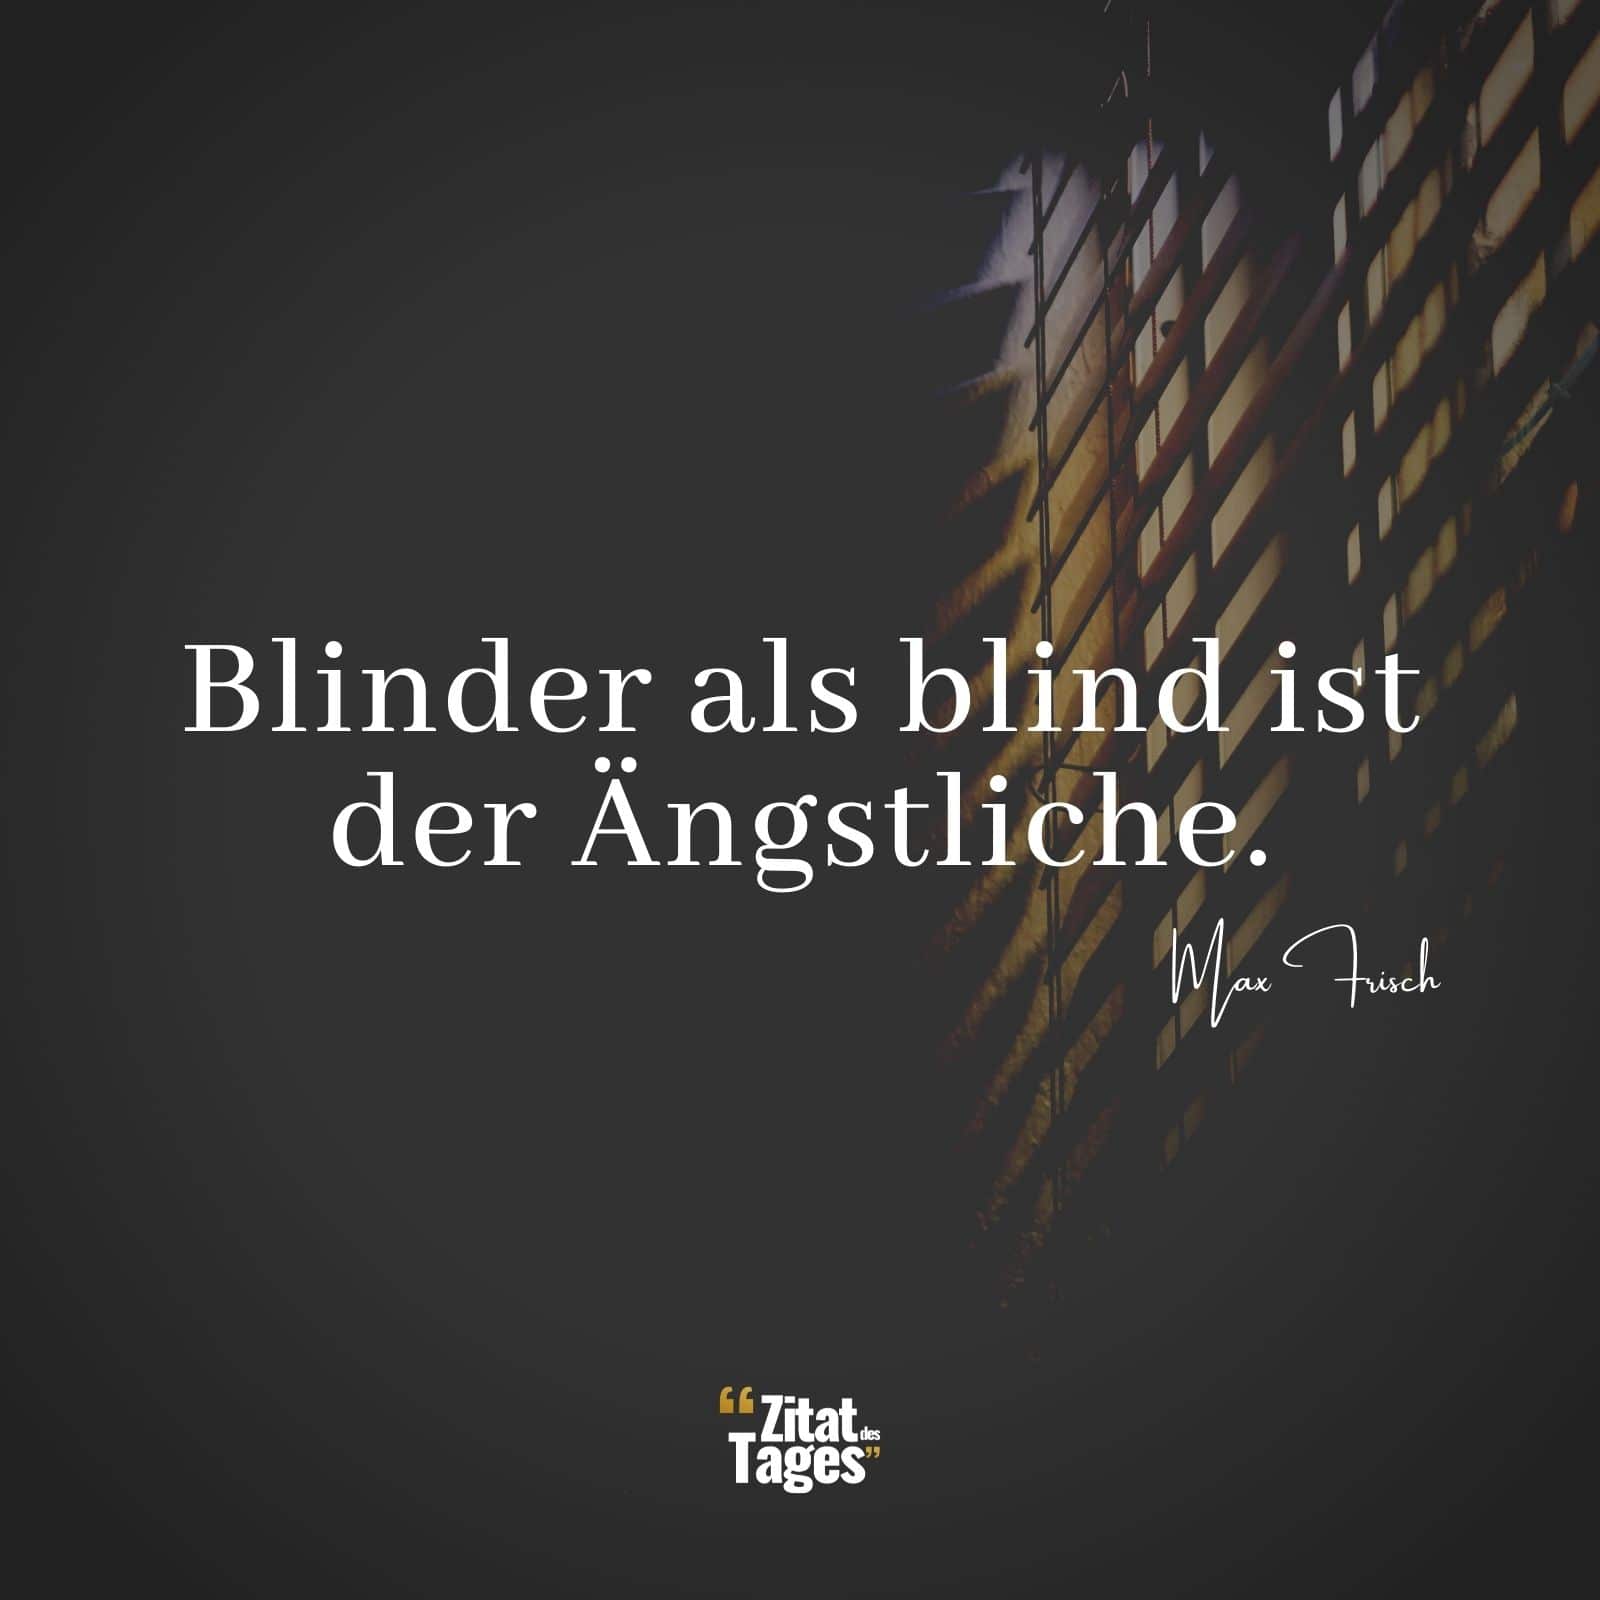 Blinder als blind ist der Ängstliche. - Max Frisch